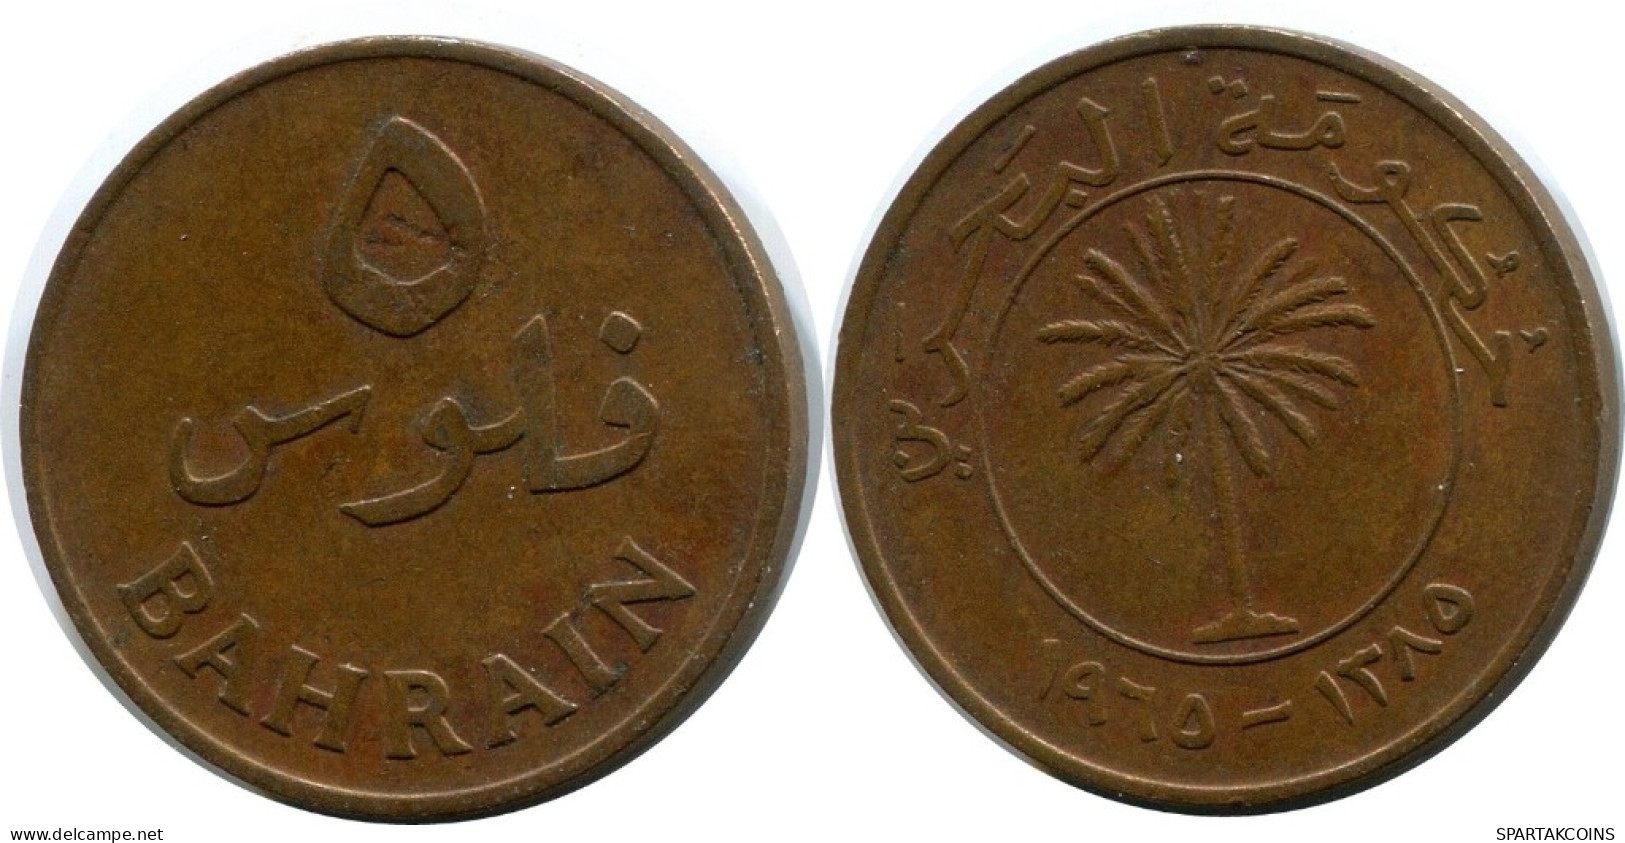 5 FILS 1965 BAHRAIN Islamic Coin #AK179.U.A - Bahrein